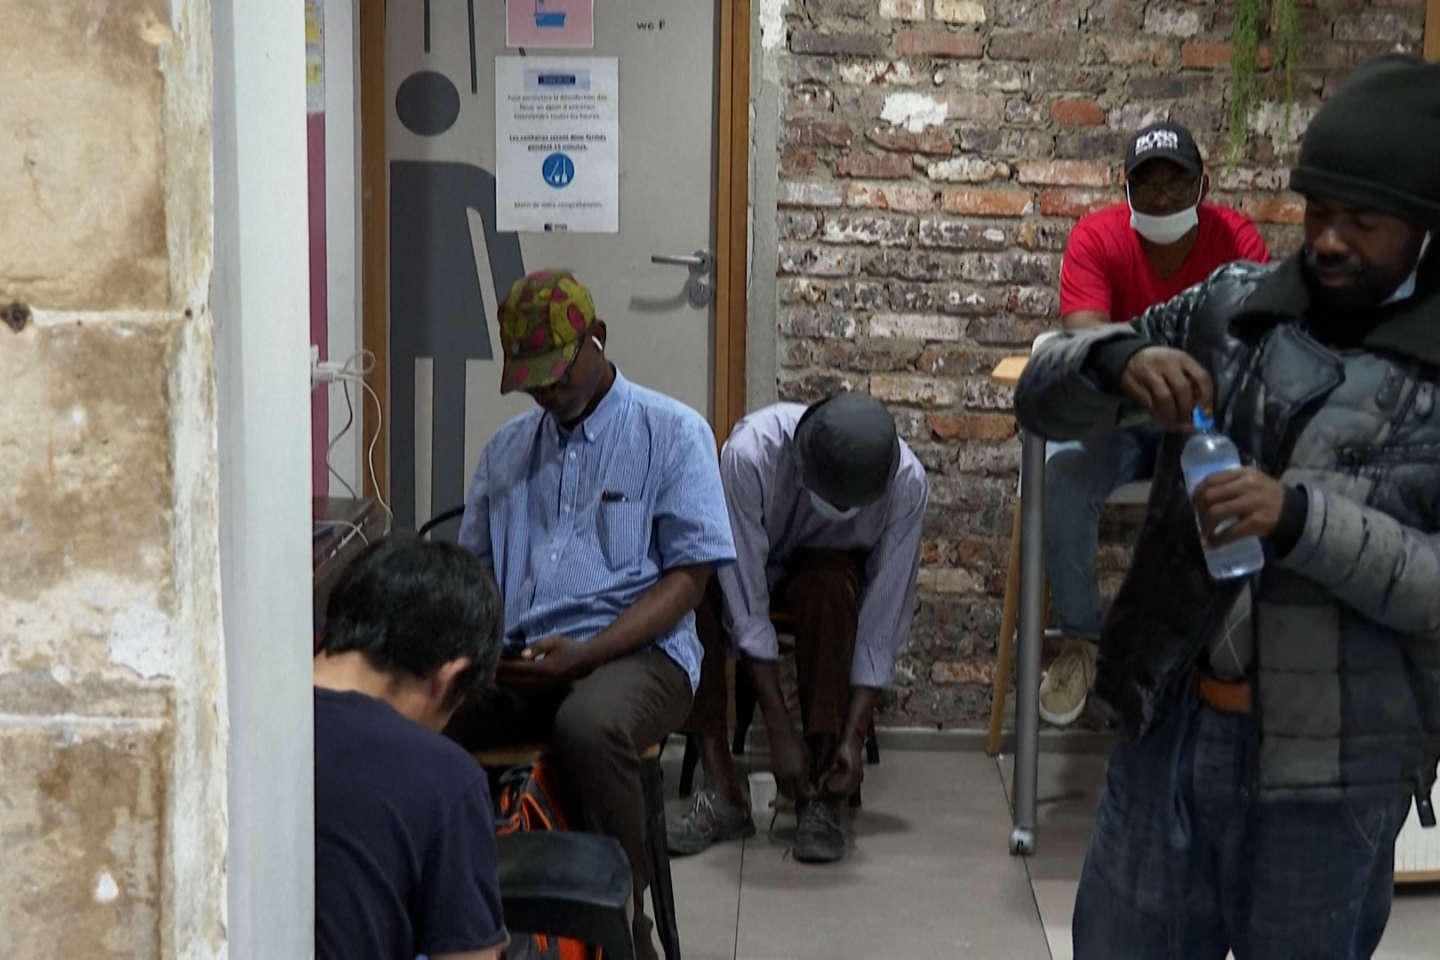 Canicule : des personnes sans domicile fixe trouvent refuge dans un centre Emmaüs